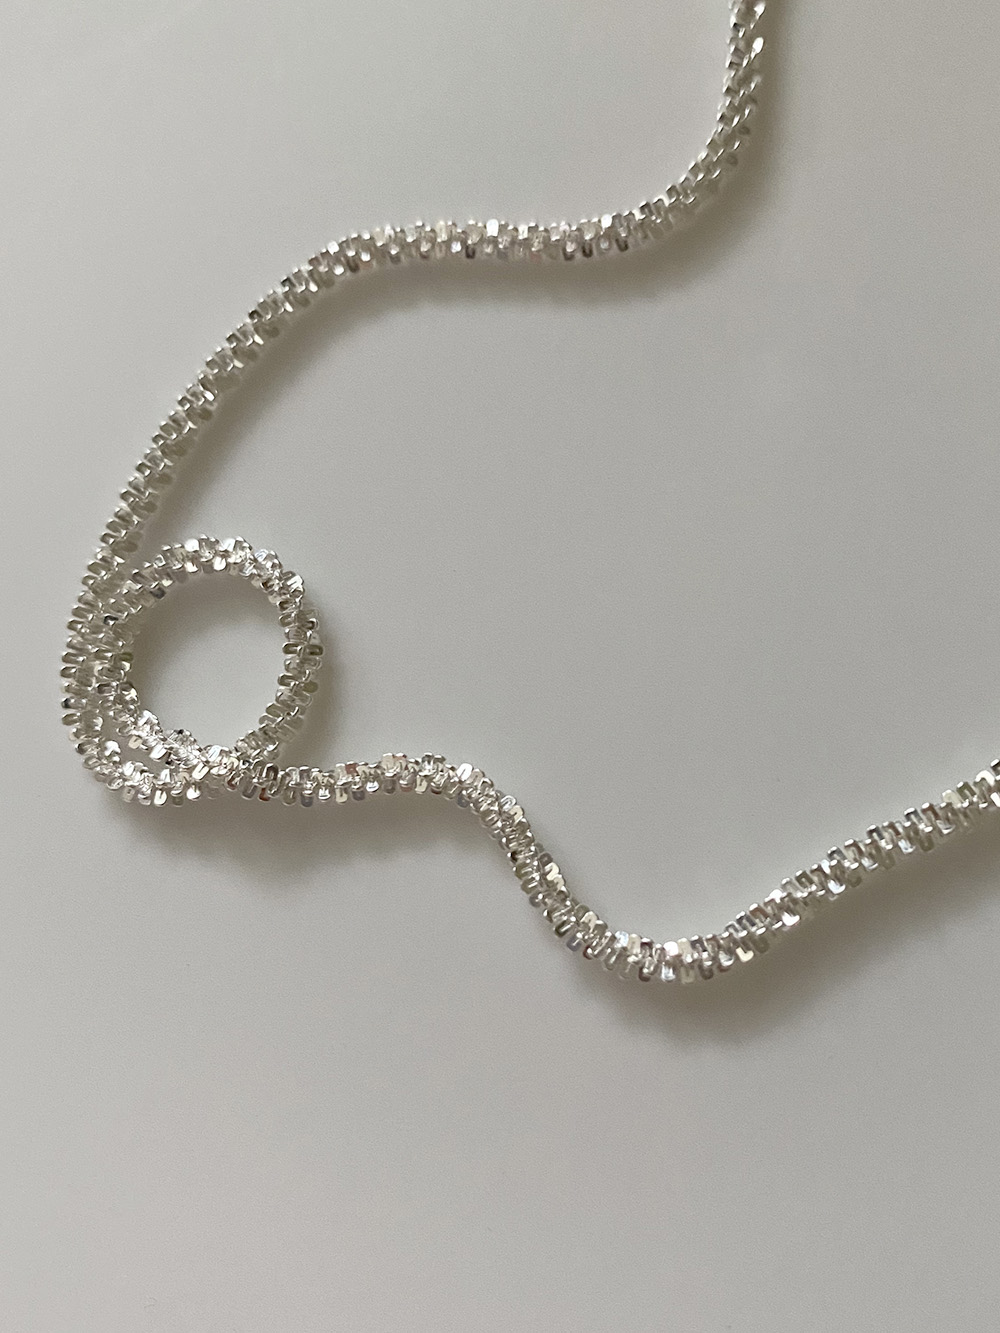 [92.5 silver] dense necklace